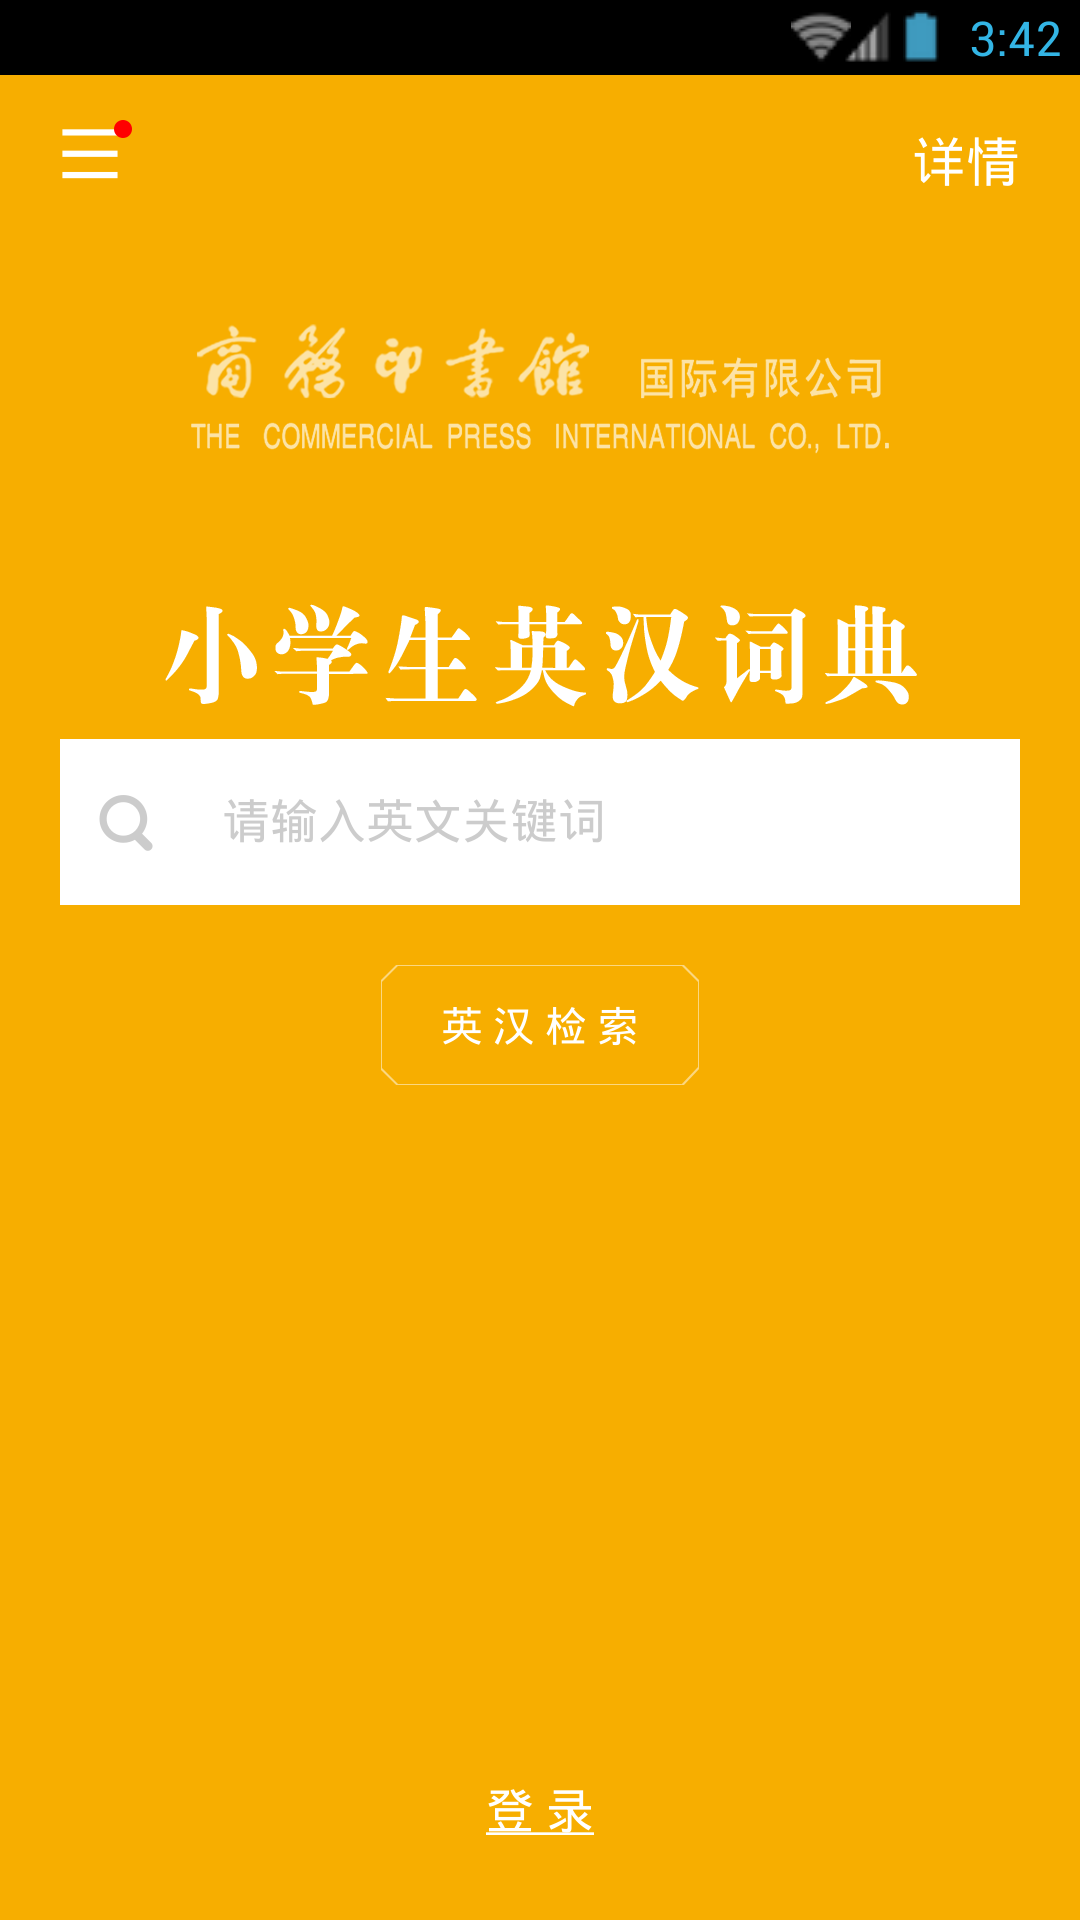 小学生英汉词典app下载